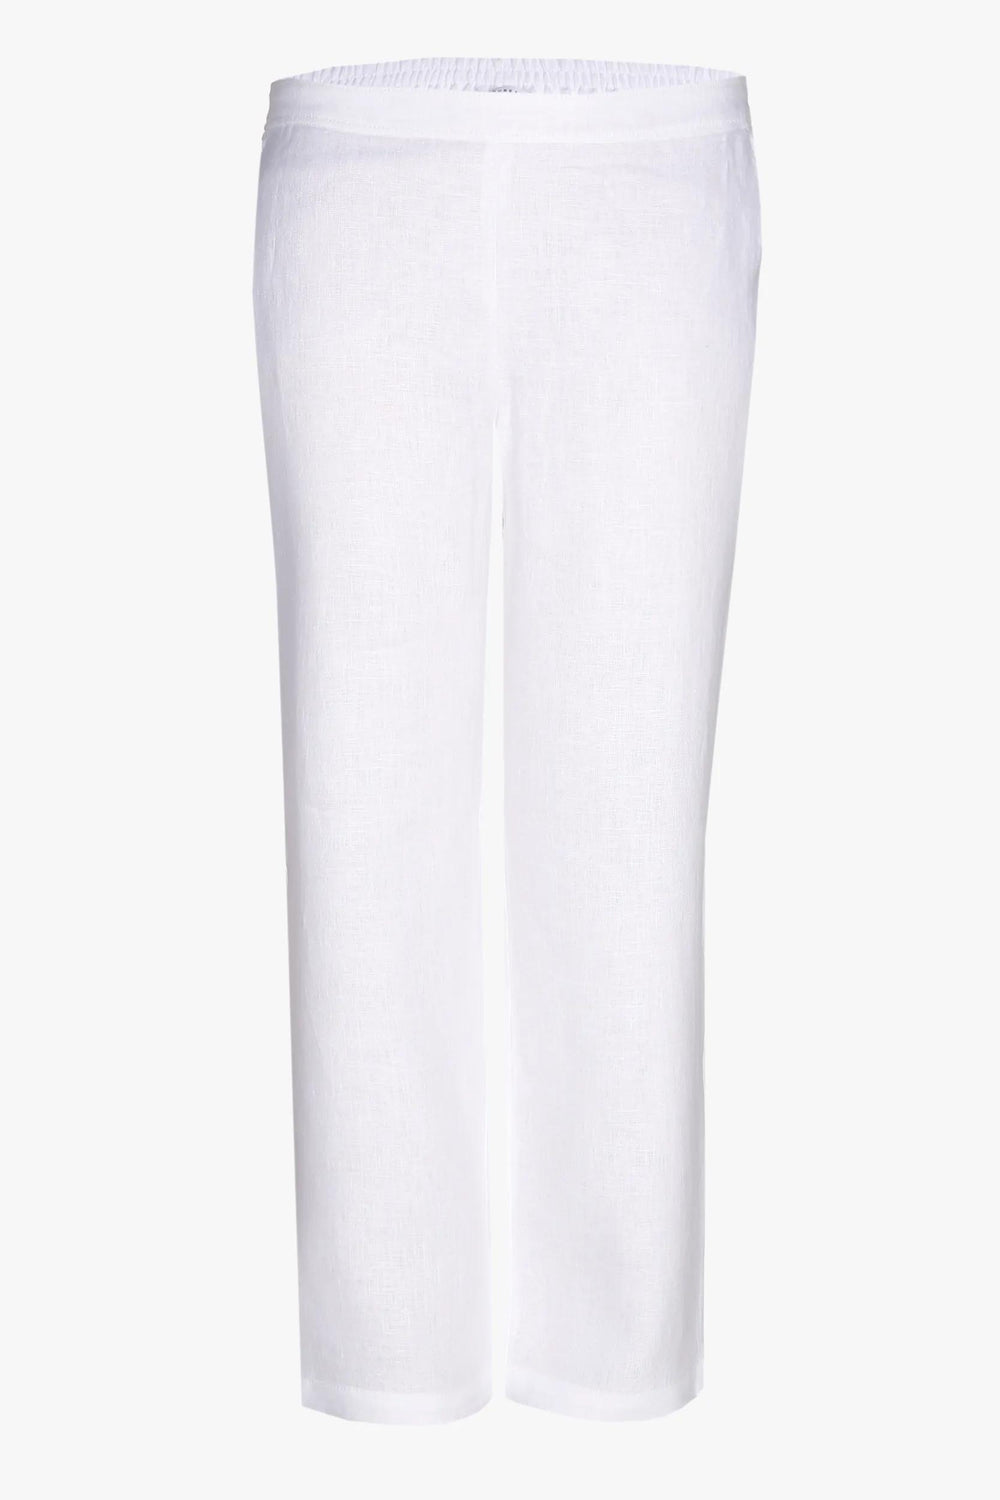 witte linnen broek - xandres - - grote maten - dameskleding - kledingwinkel - herent - leuven